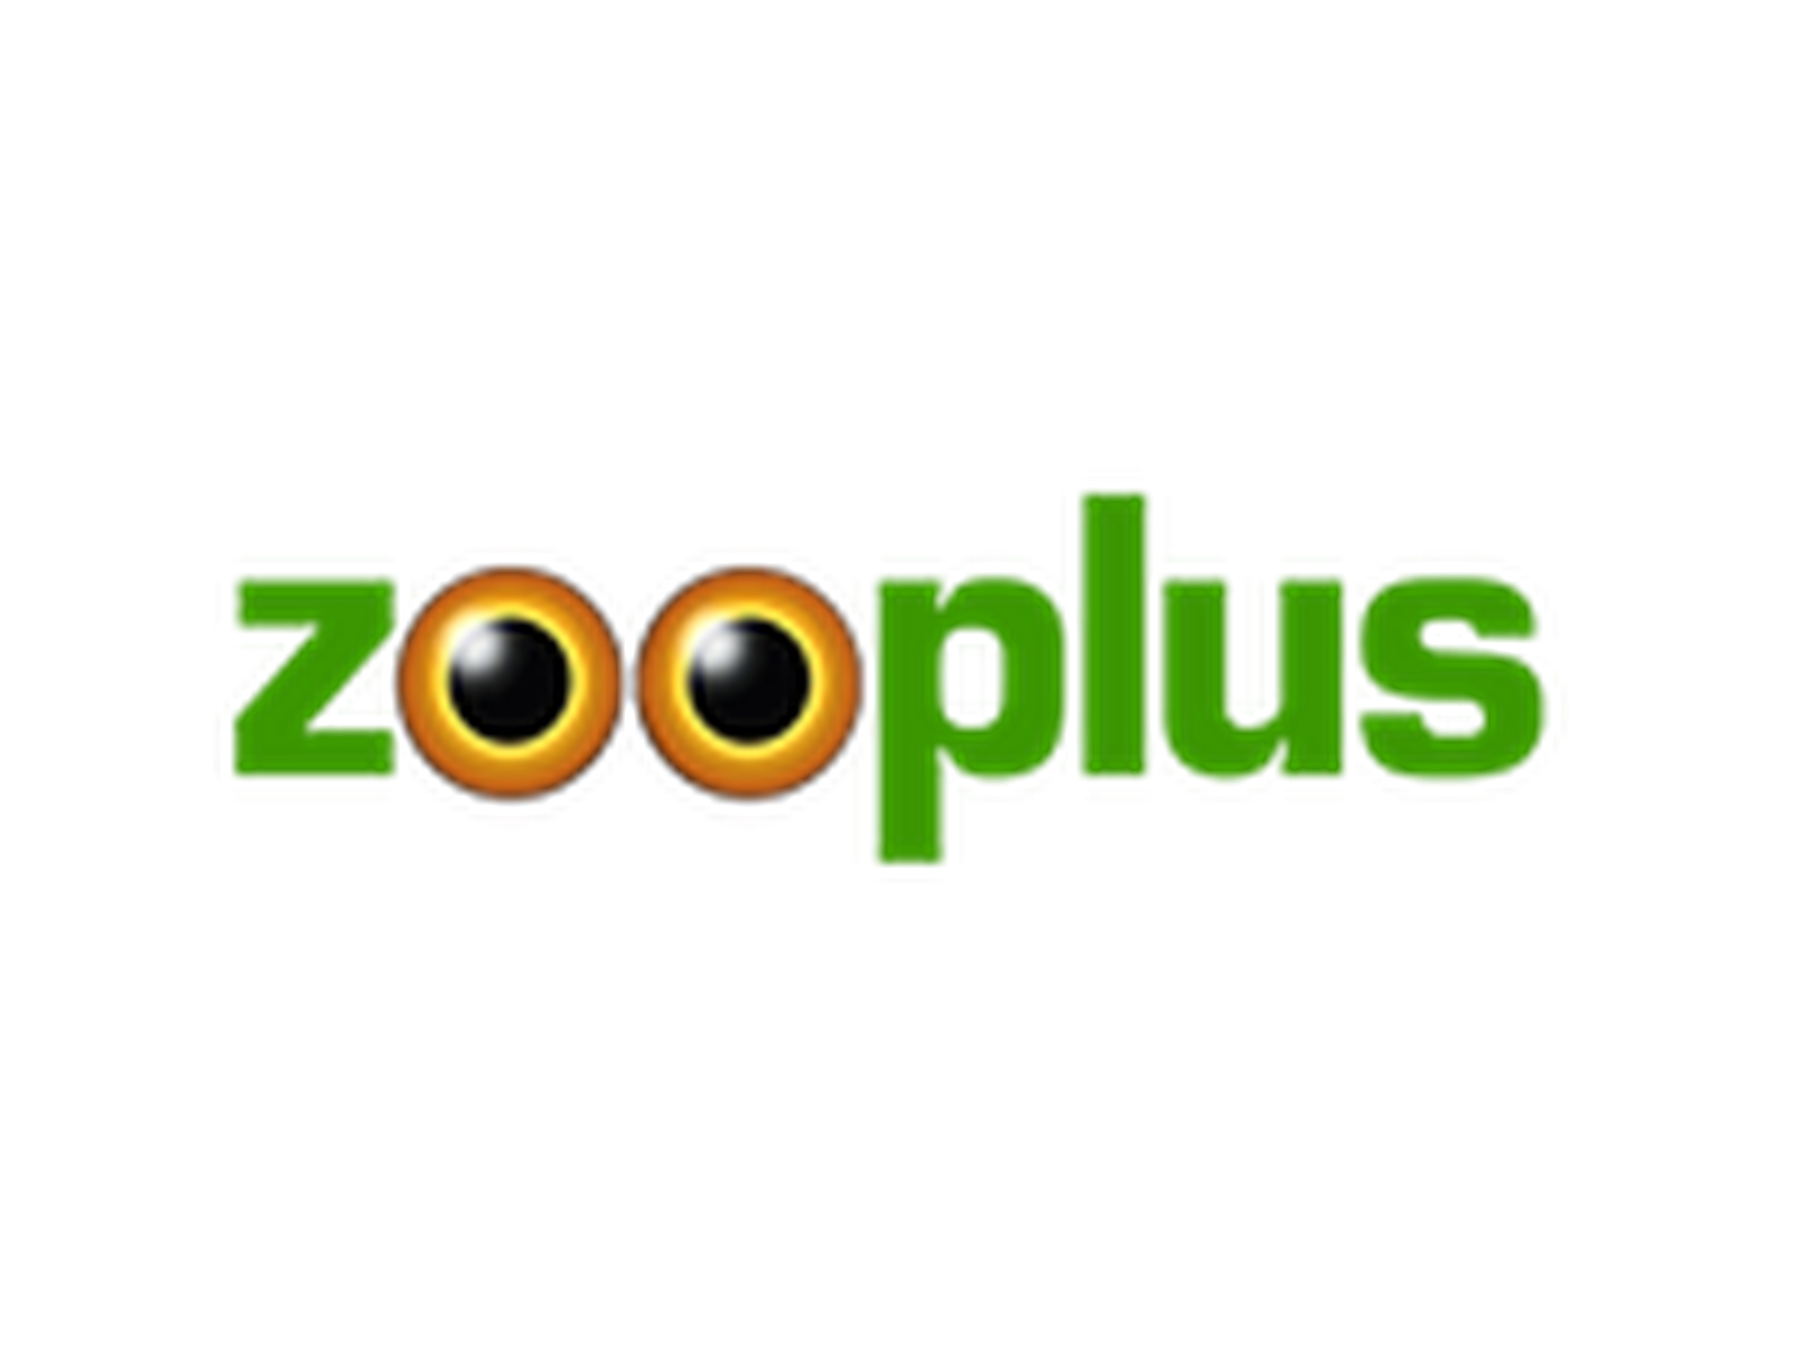 Zooplus rabatkode